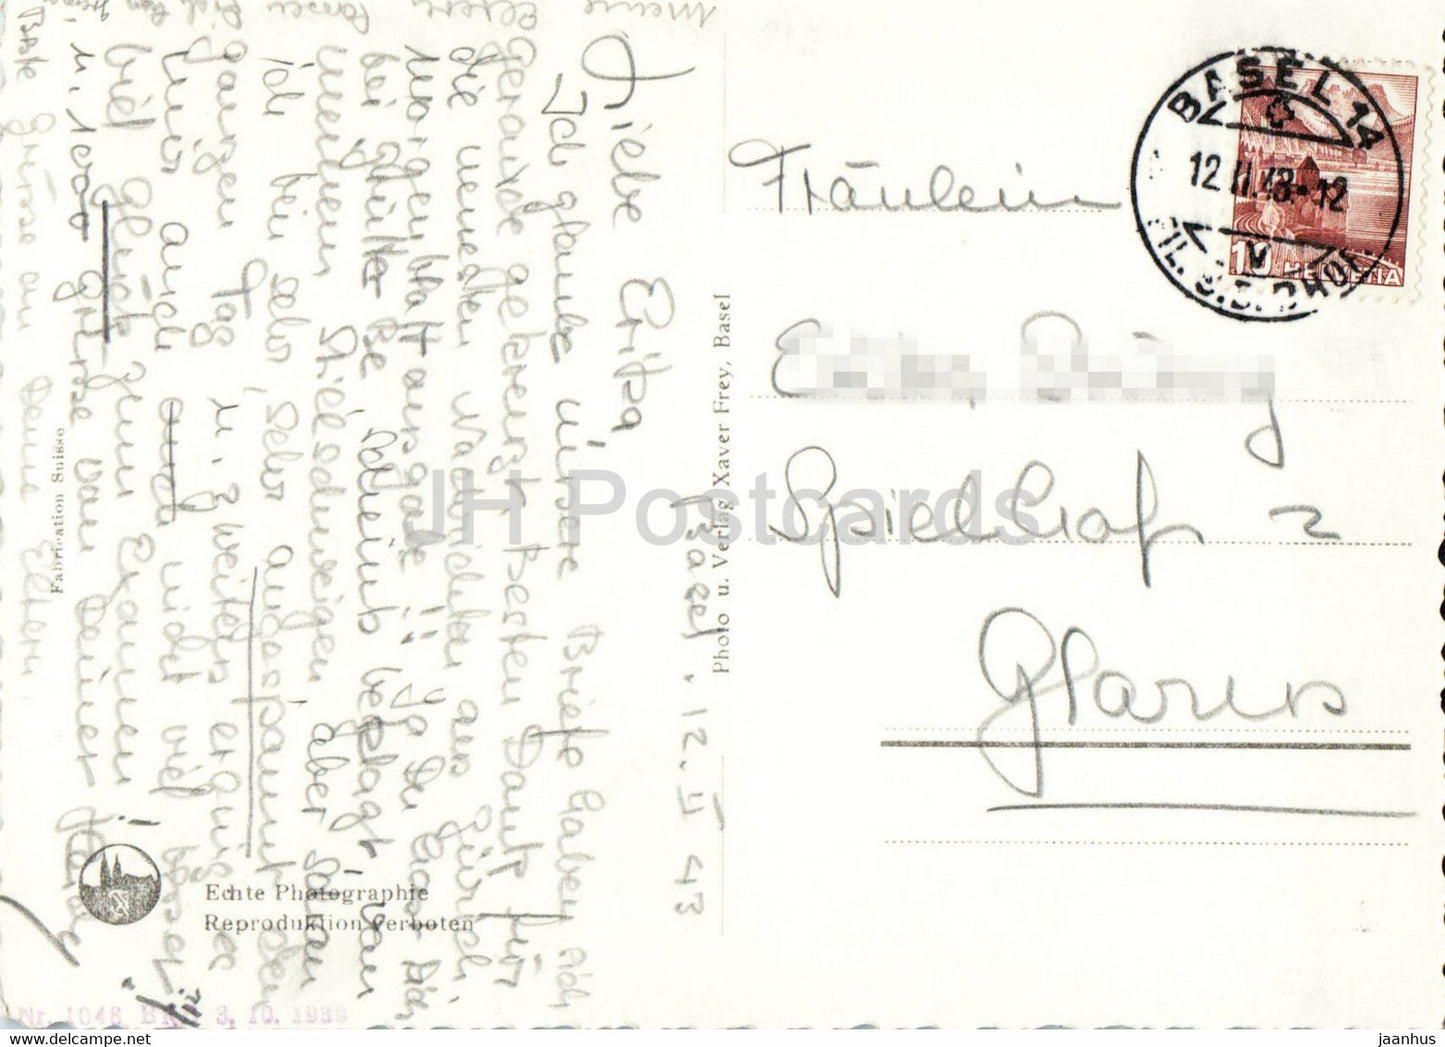 Basel - Die drei Rheinbrücken und Münsterturm - Kathedrale - 547 - alte Postkarte - 1943 - Schweiz - gebraucht